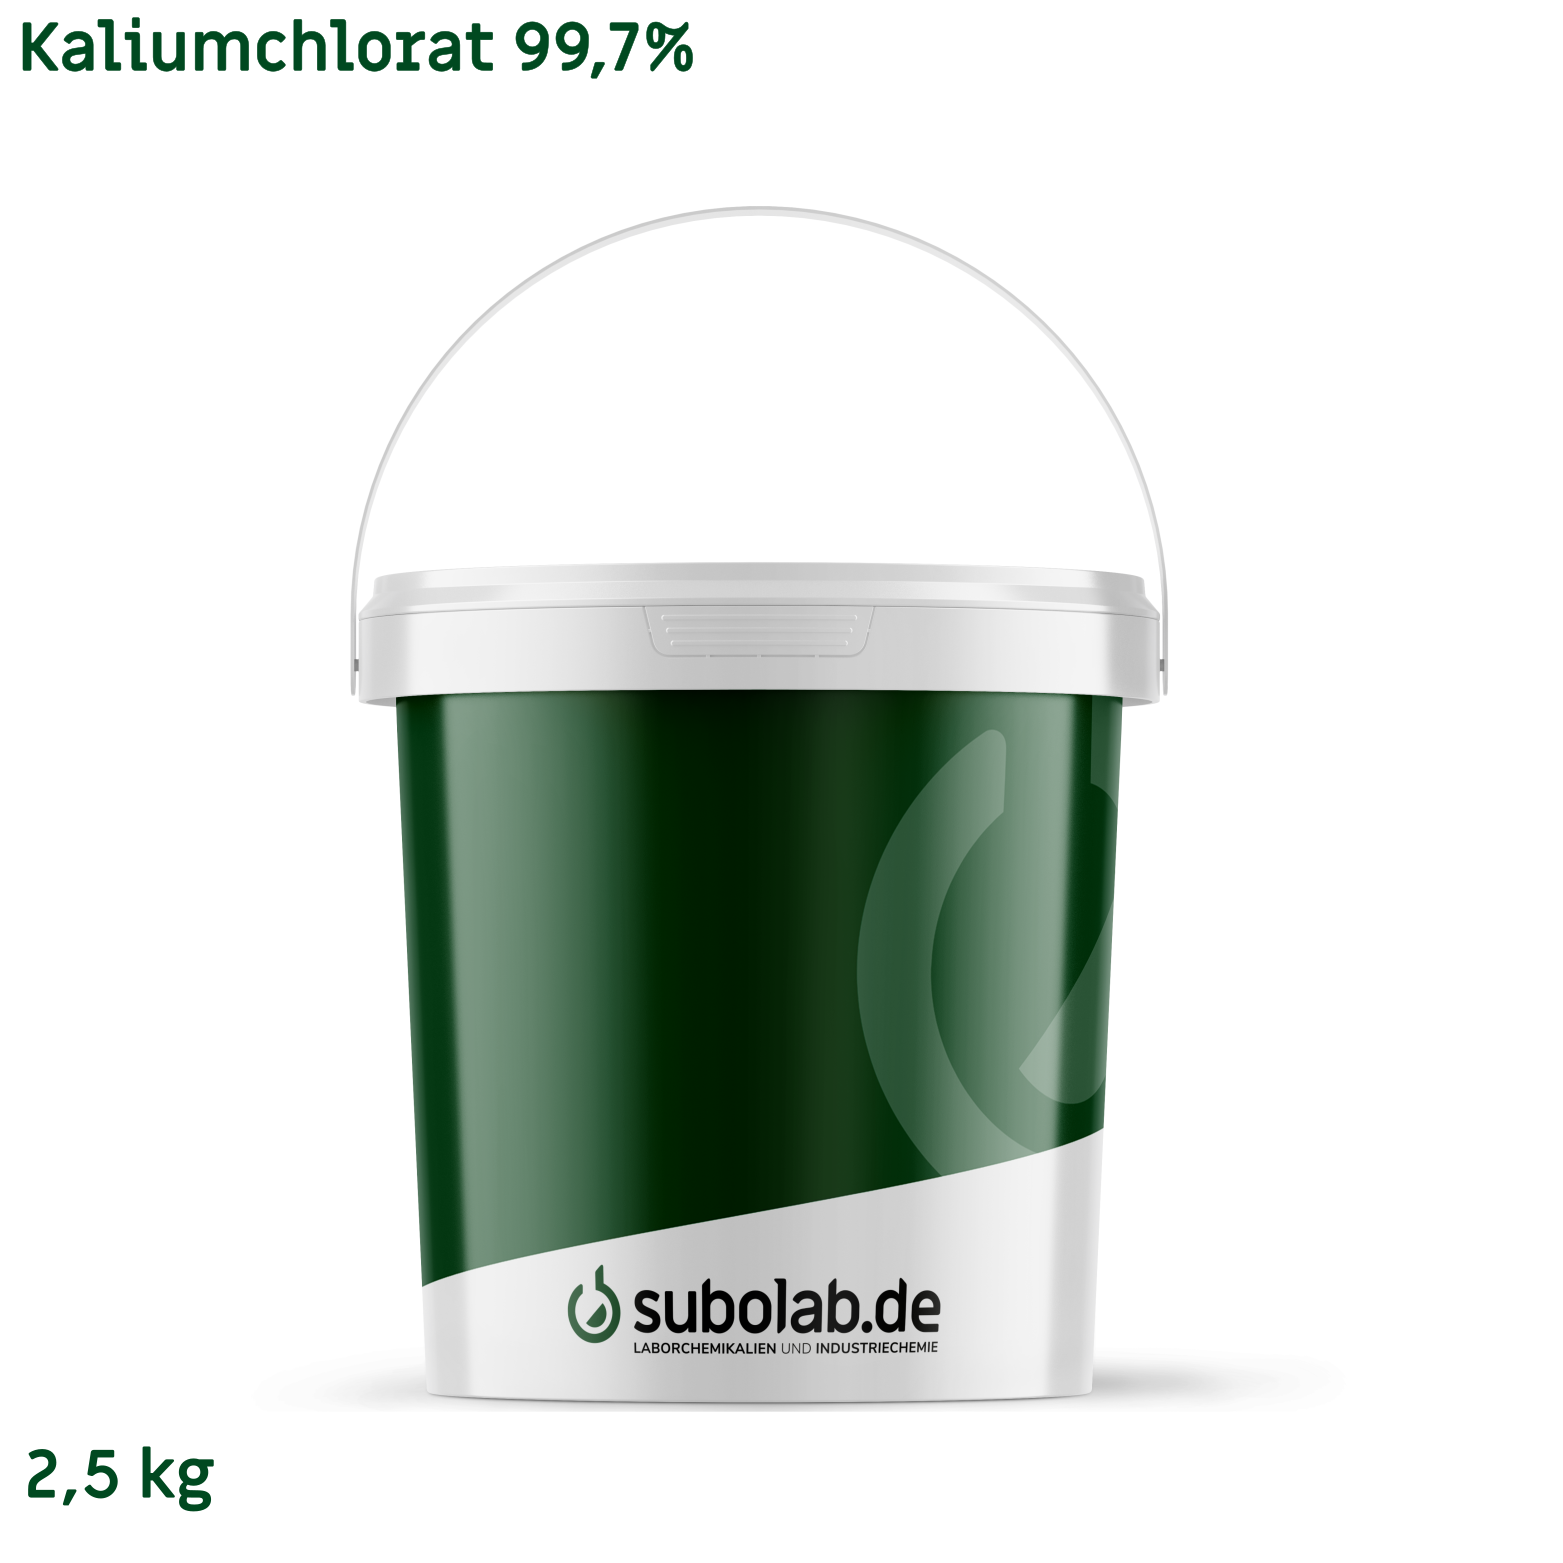 Bild von Kaliumchlorat 99,7% (2,5 kg)